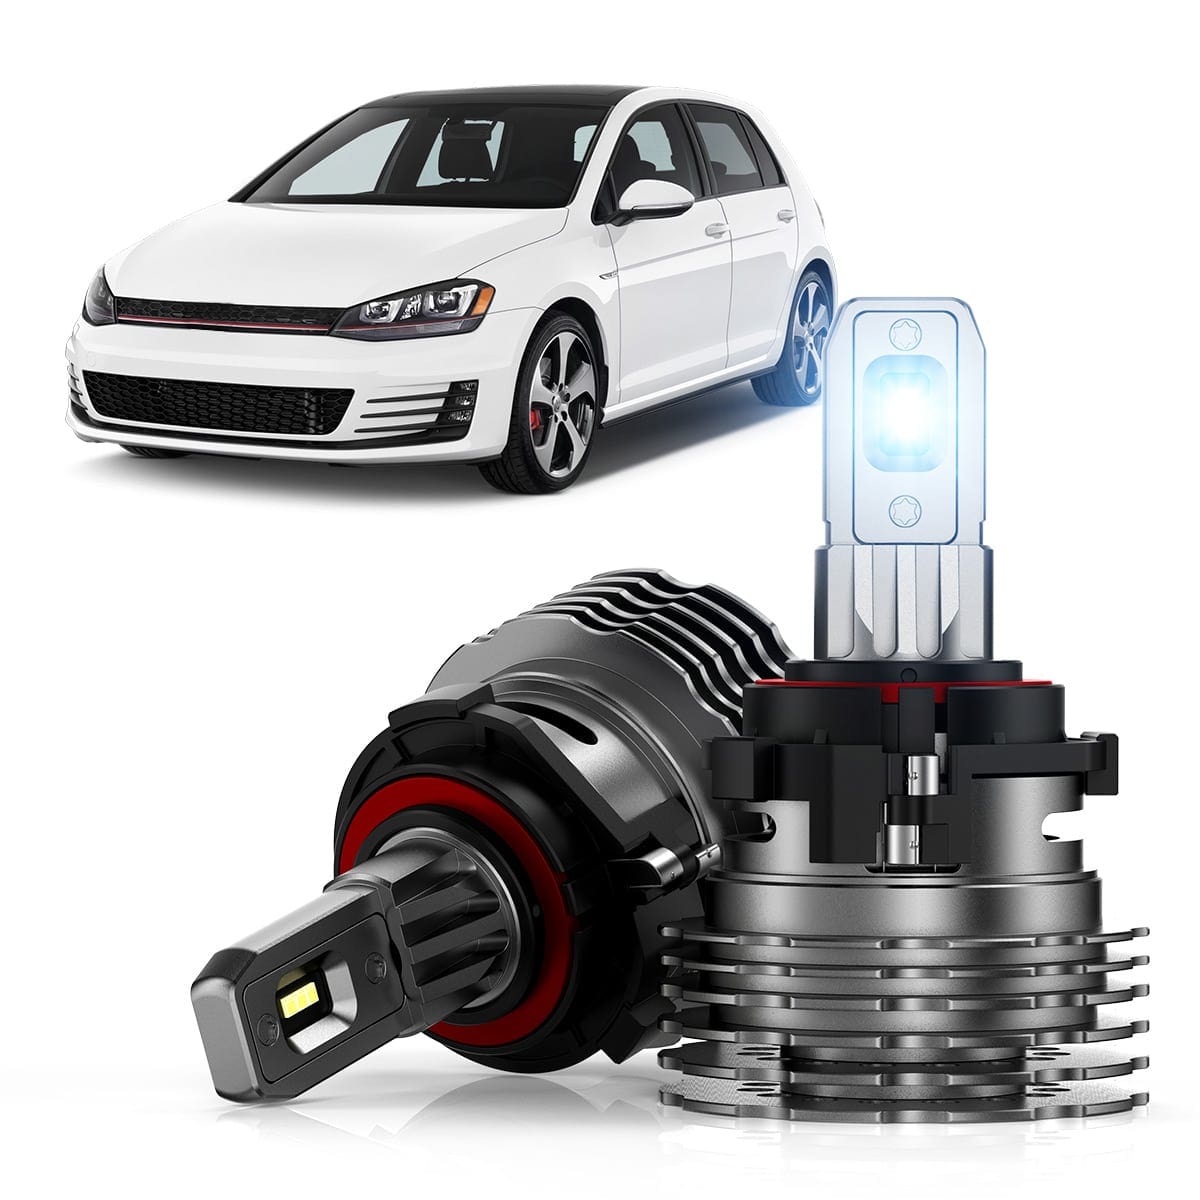 H7 LED Headlight Bulb Retainers Holder Adapter for VW Volkswagen Golf 7